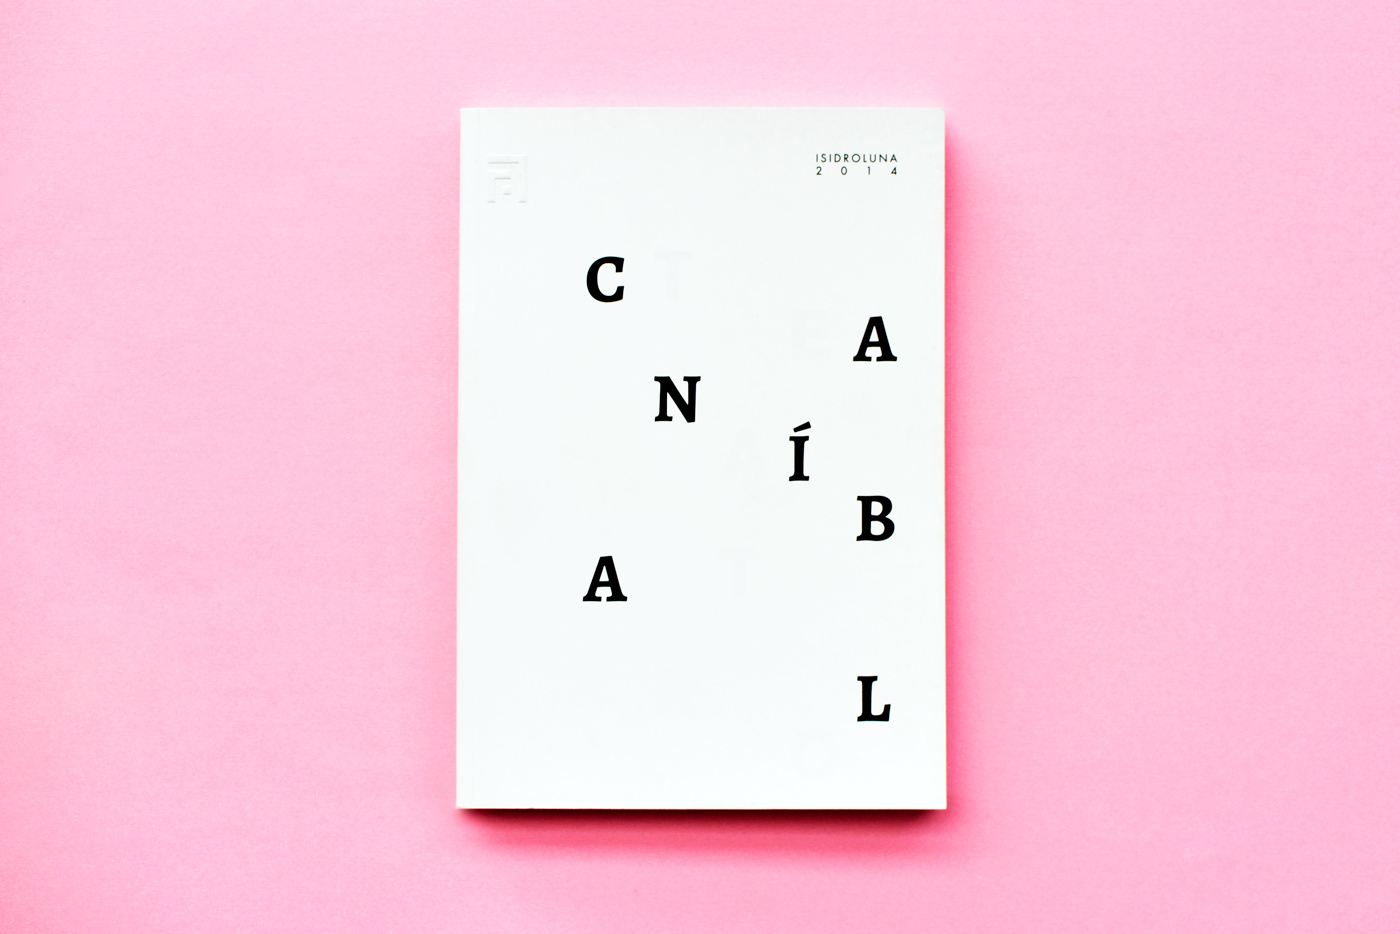 Diseño editorial diseño gráfico editorial design  book CUENCA - ECUADOR numeral Numeral Studio singular Colección Singular Diseño editorial Cuenca